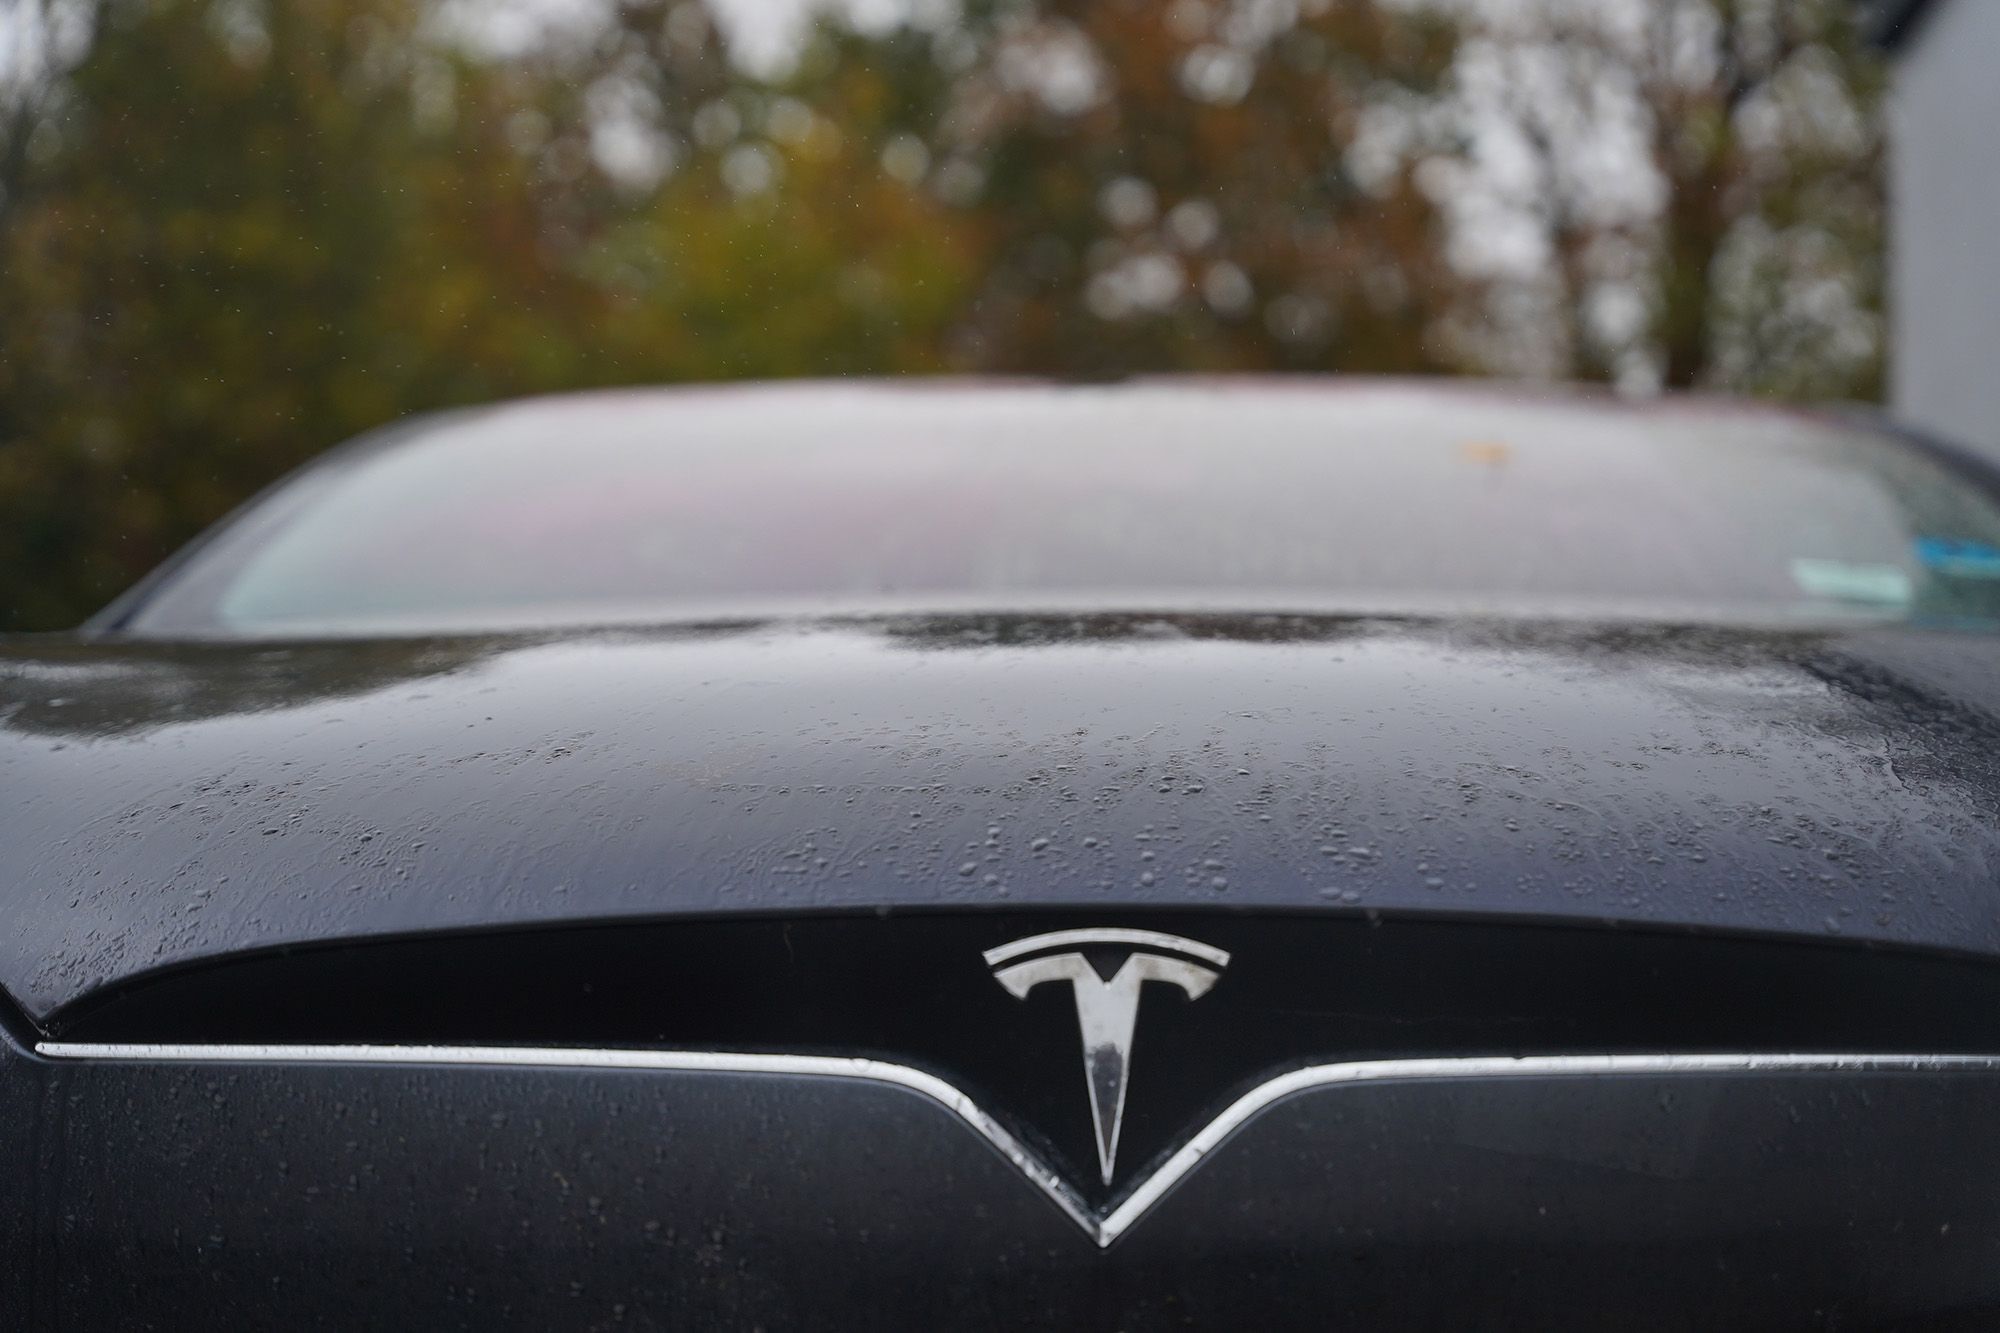 Tesla front badge